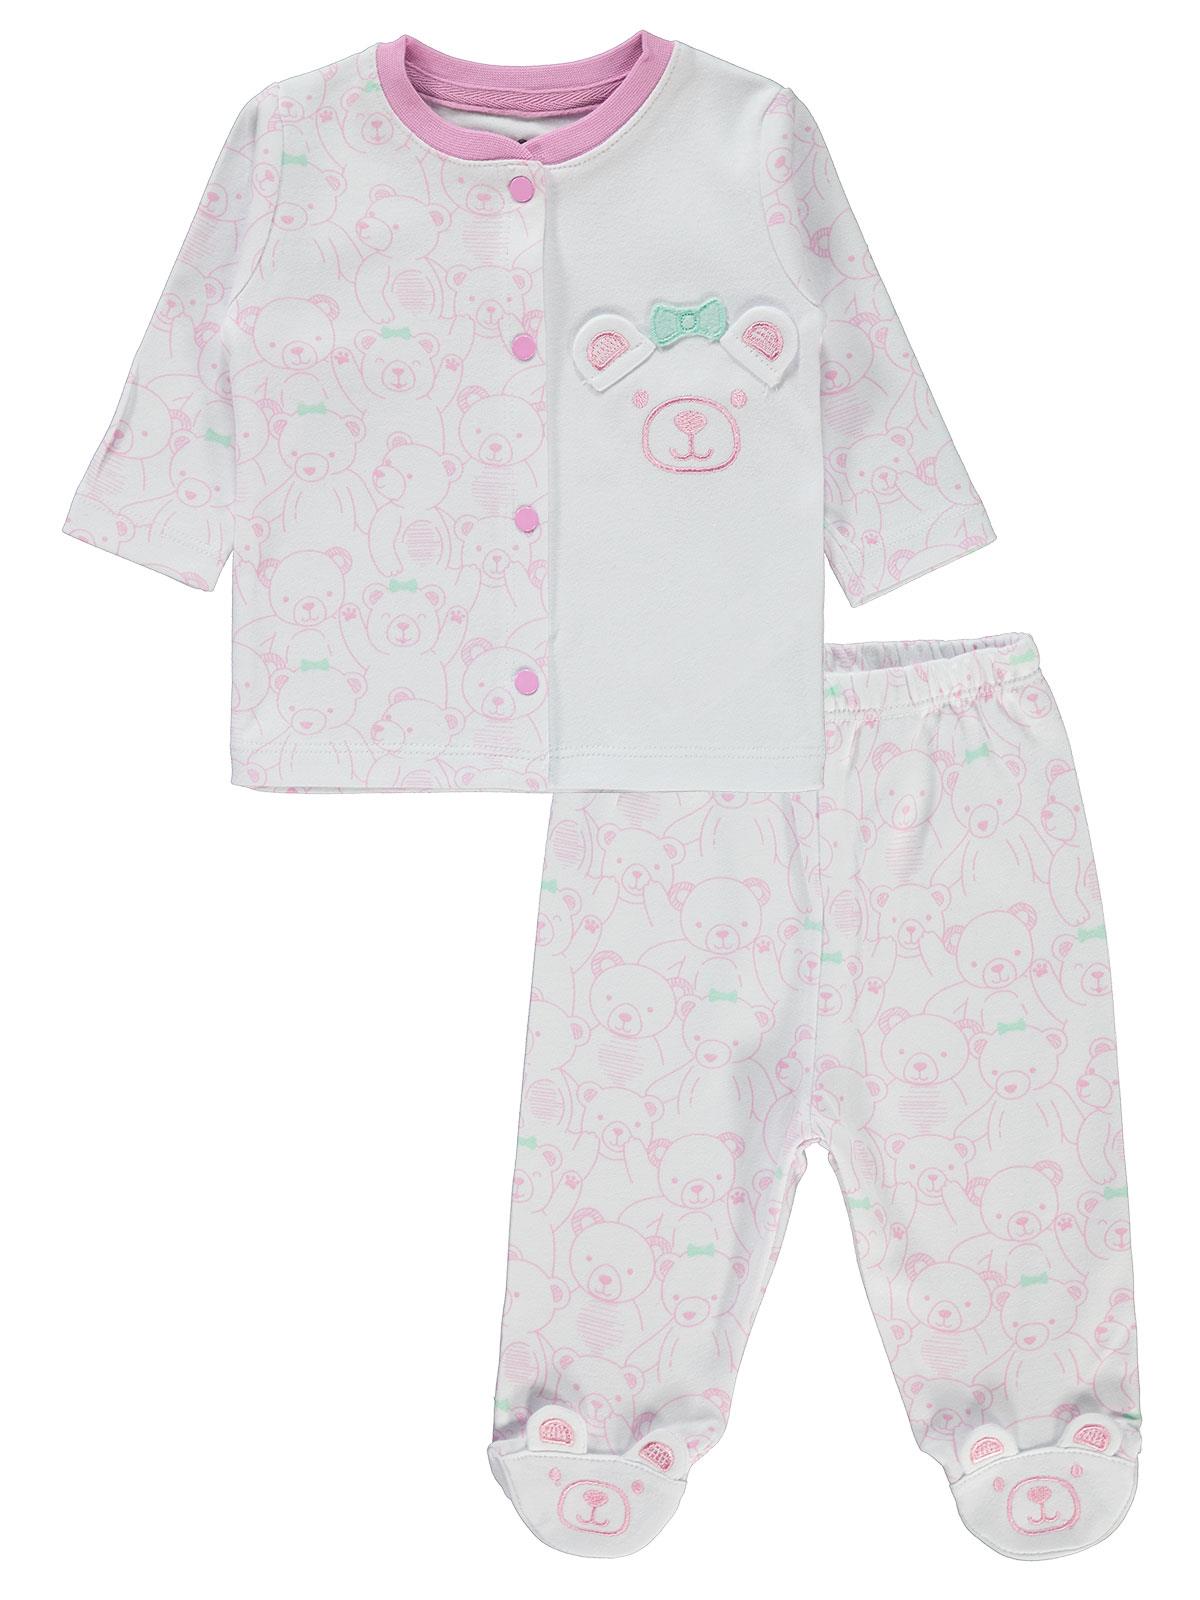 Kujju Kız Bebek Pijama Takımı 0-6 Ay Pembe